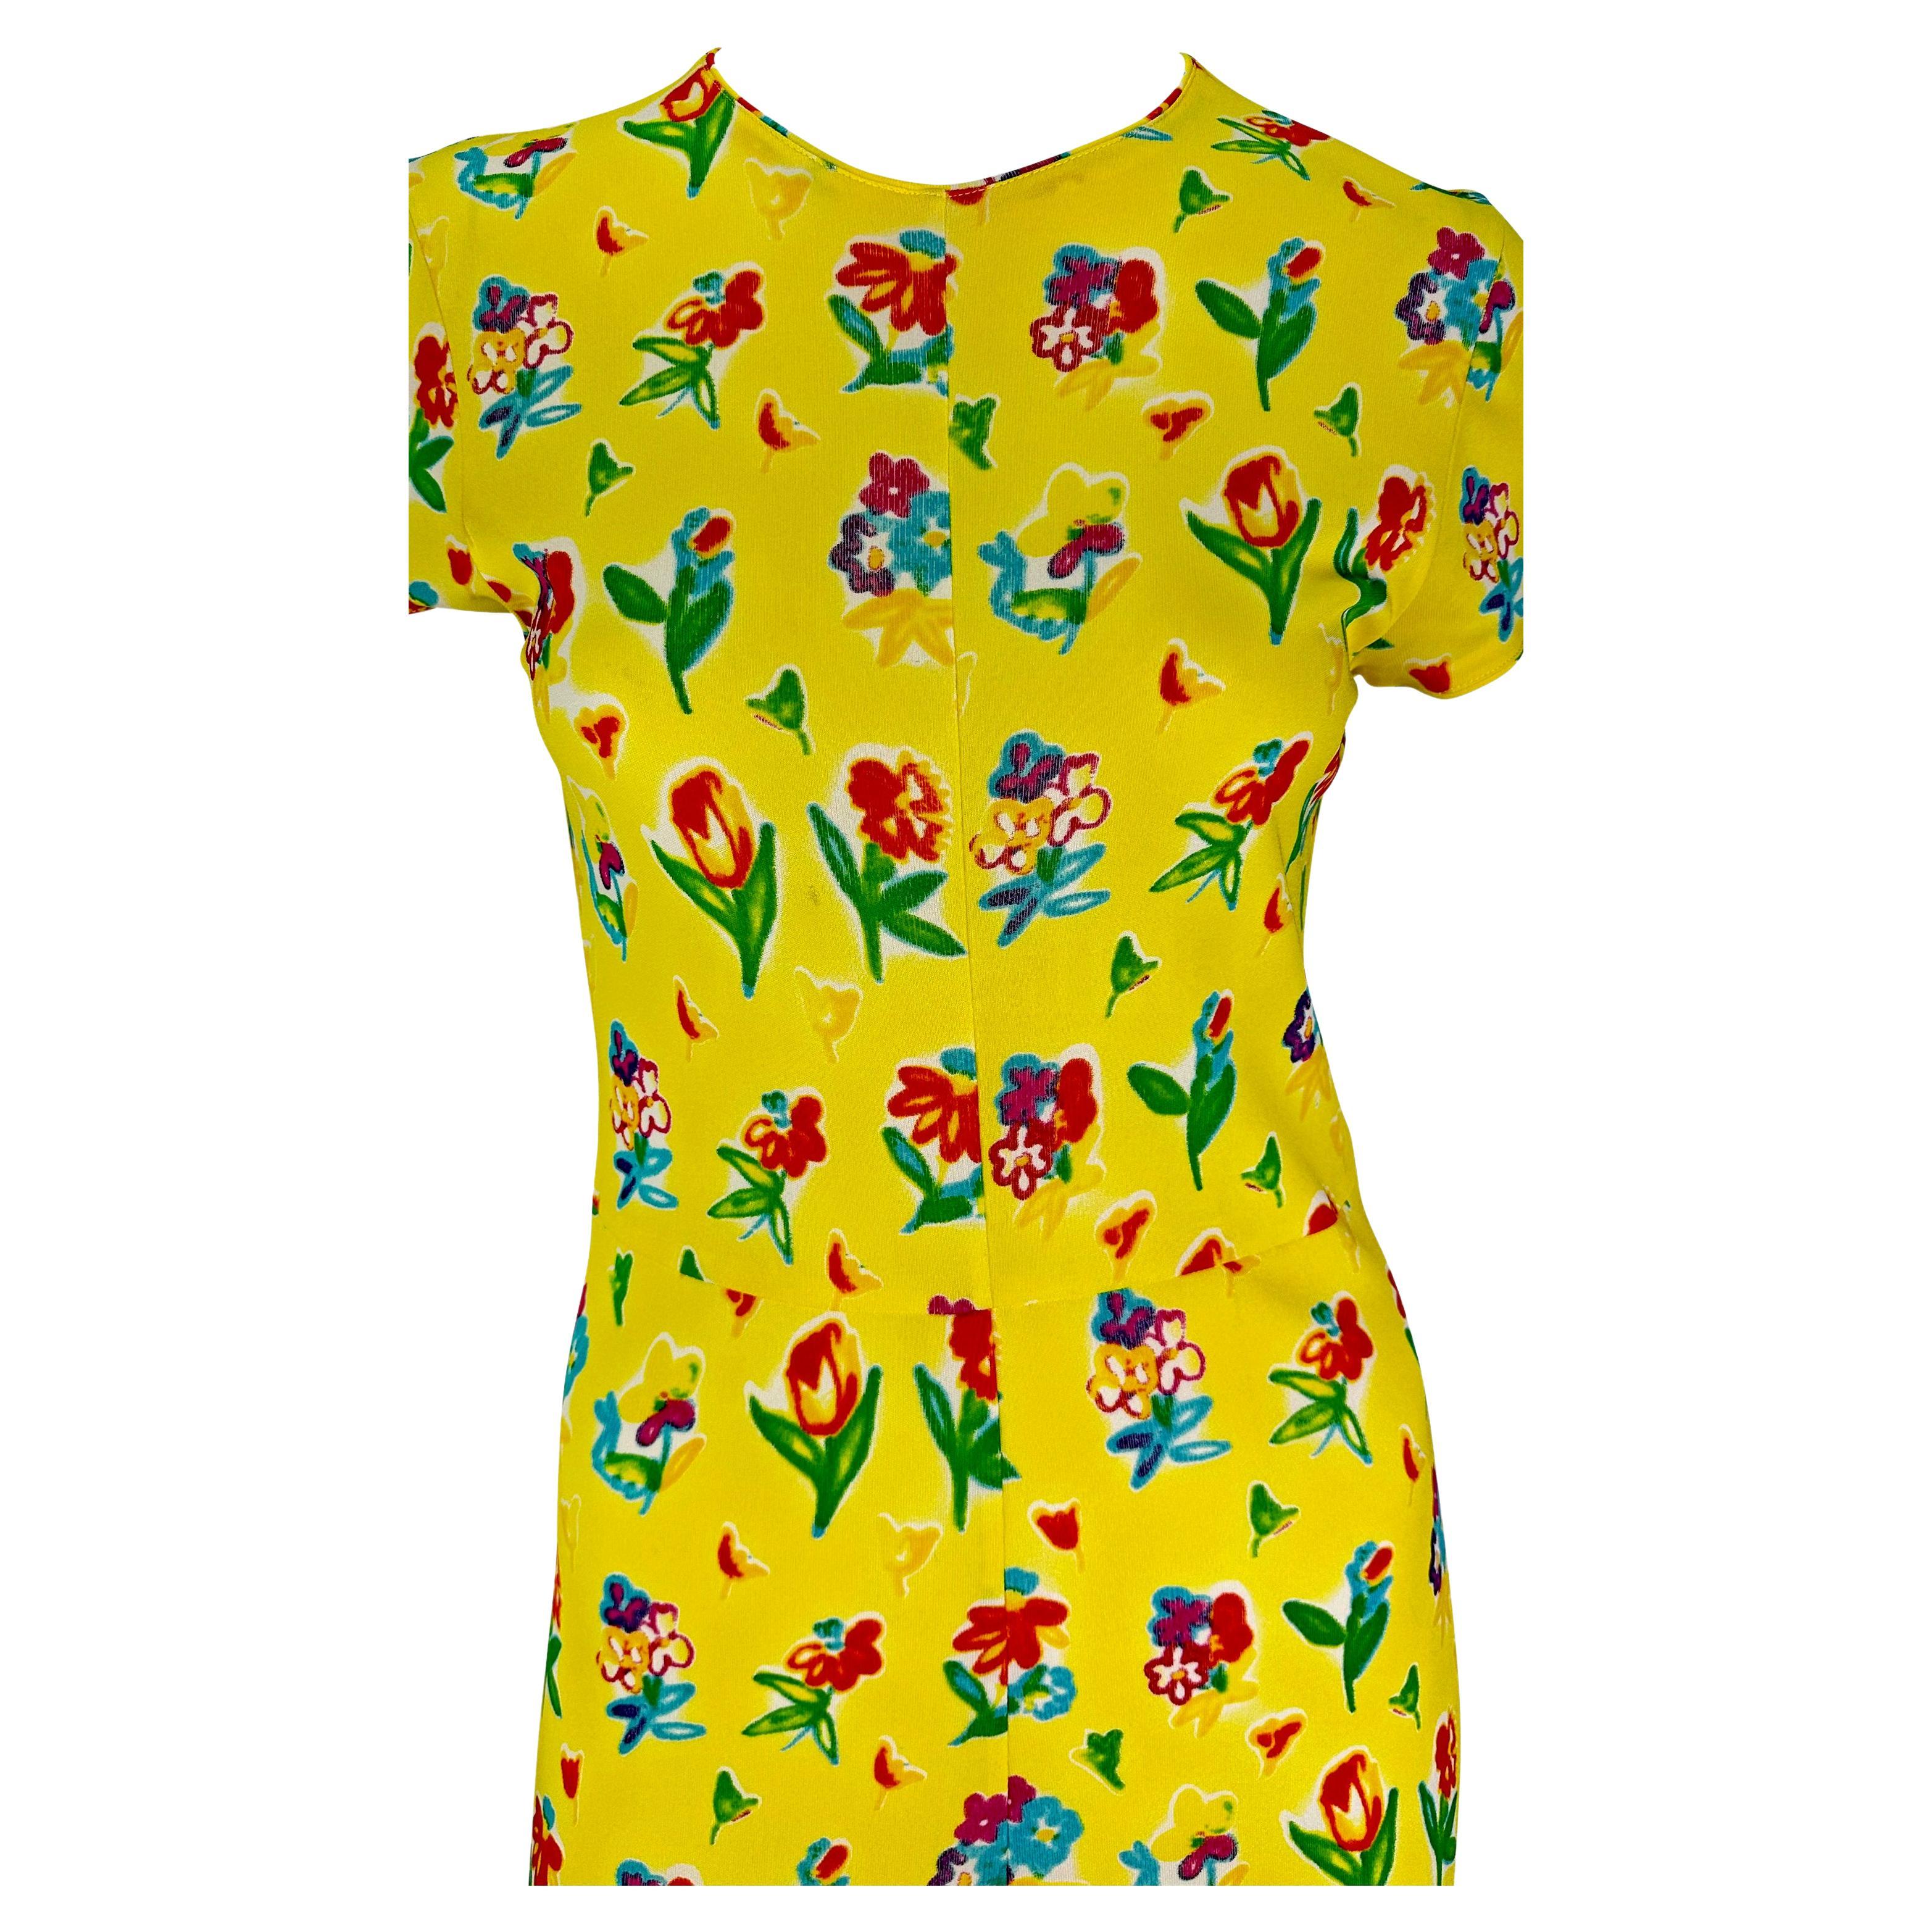 Voici une magnifique robe midi Gianni Versace à fleurs jaunes, conçue par Gianni Versace. Issue de la collection printemps/été 1996, cette robe jaune très féminine est recouverte d'un motif floral coloré peint à la bombe. La robe est composée d'une